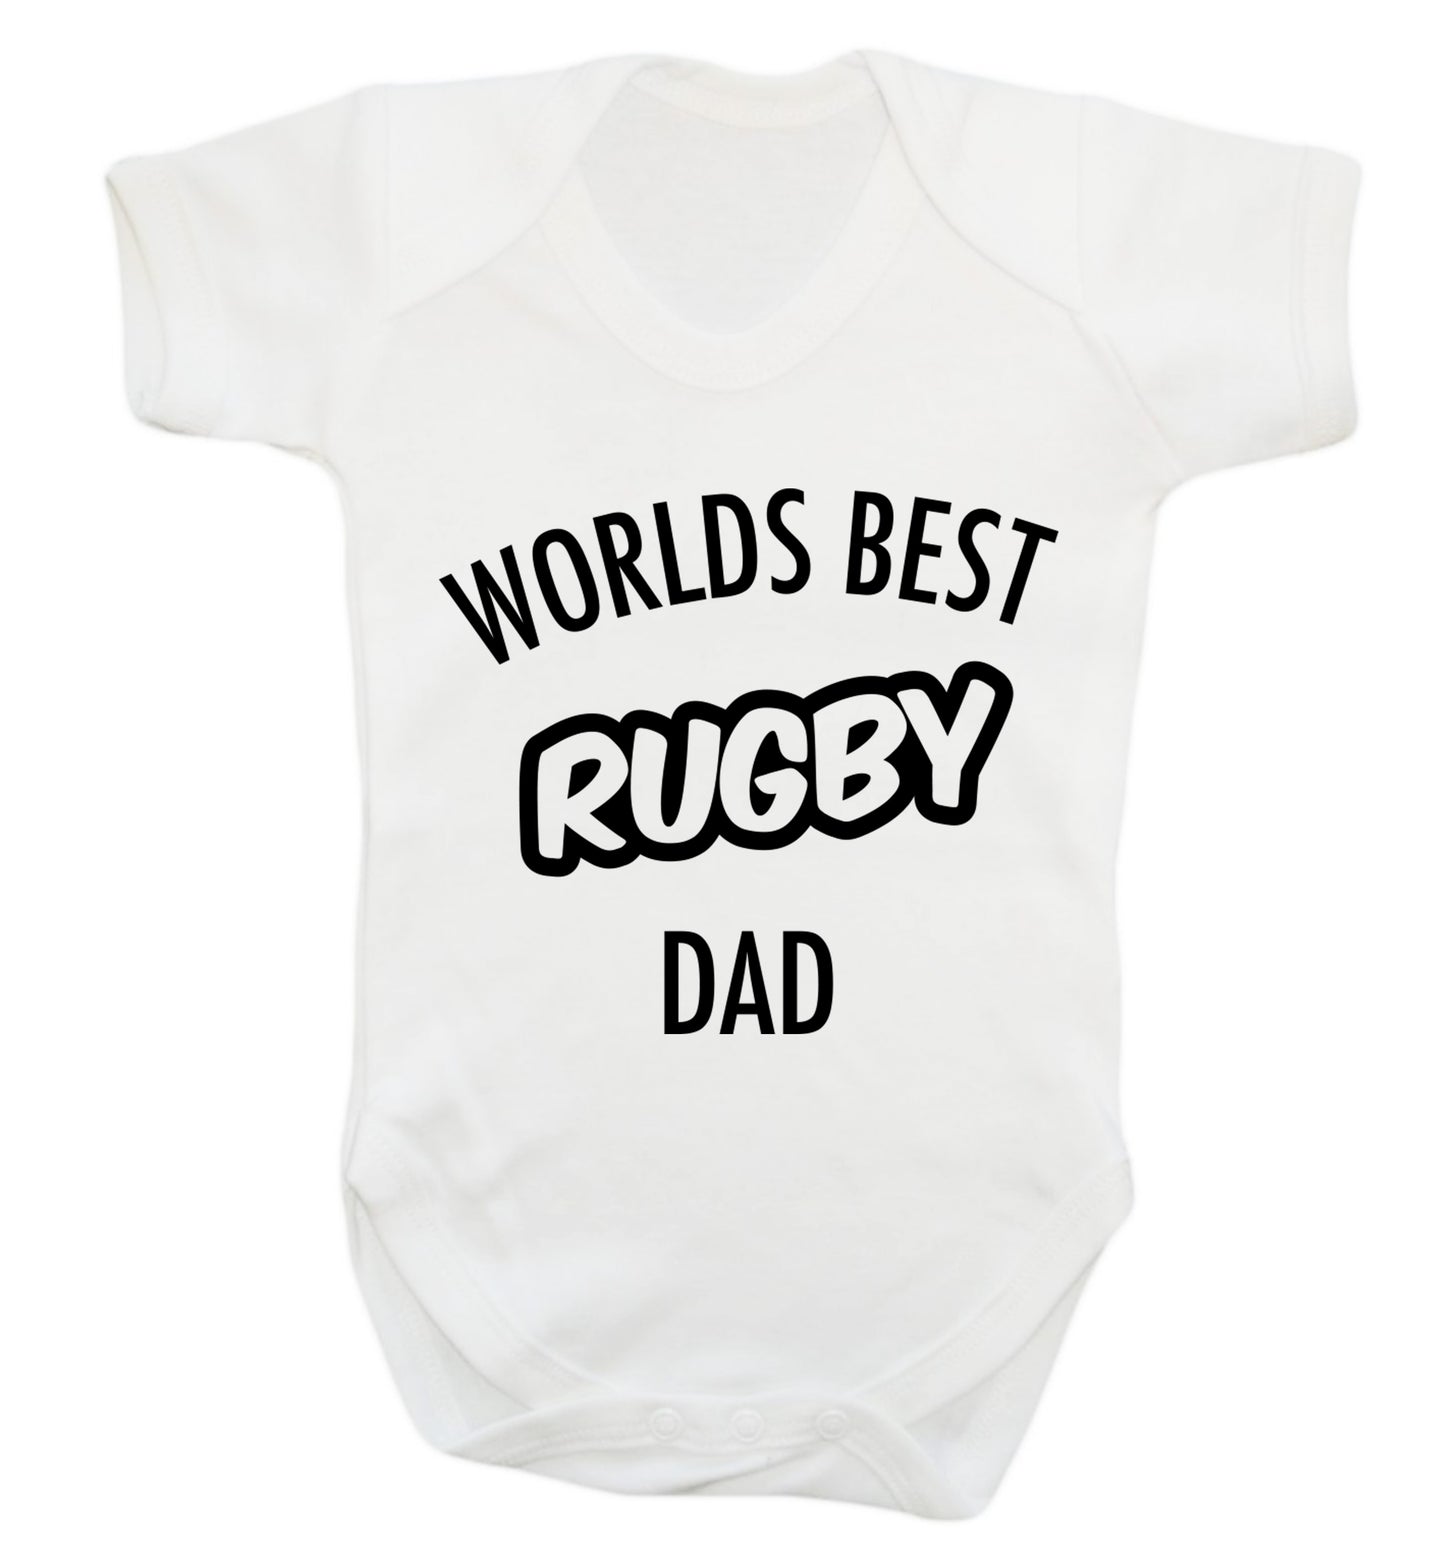 Worlds best rugby dad Baby Vest white 18-24 months